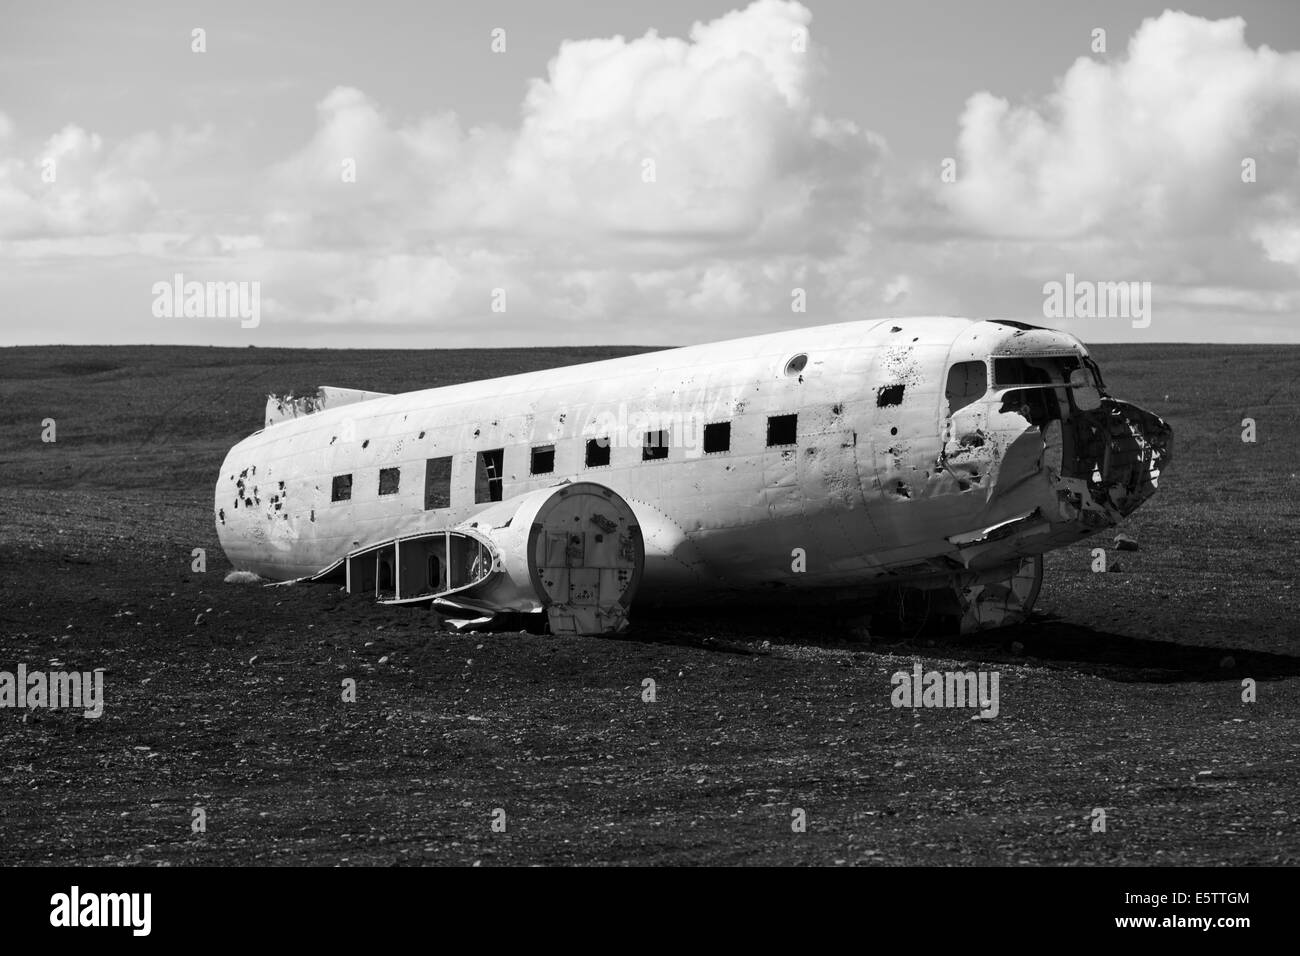 Épave abandonnée de l'avion écrasé US Navy Douglas C-47 Skytrain (basé sur DC-3), épave d'avion sur la plage noire à Sólheimasandur, sud de l'Islande Banque D'Images